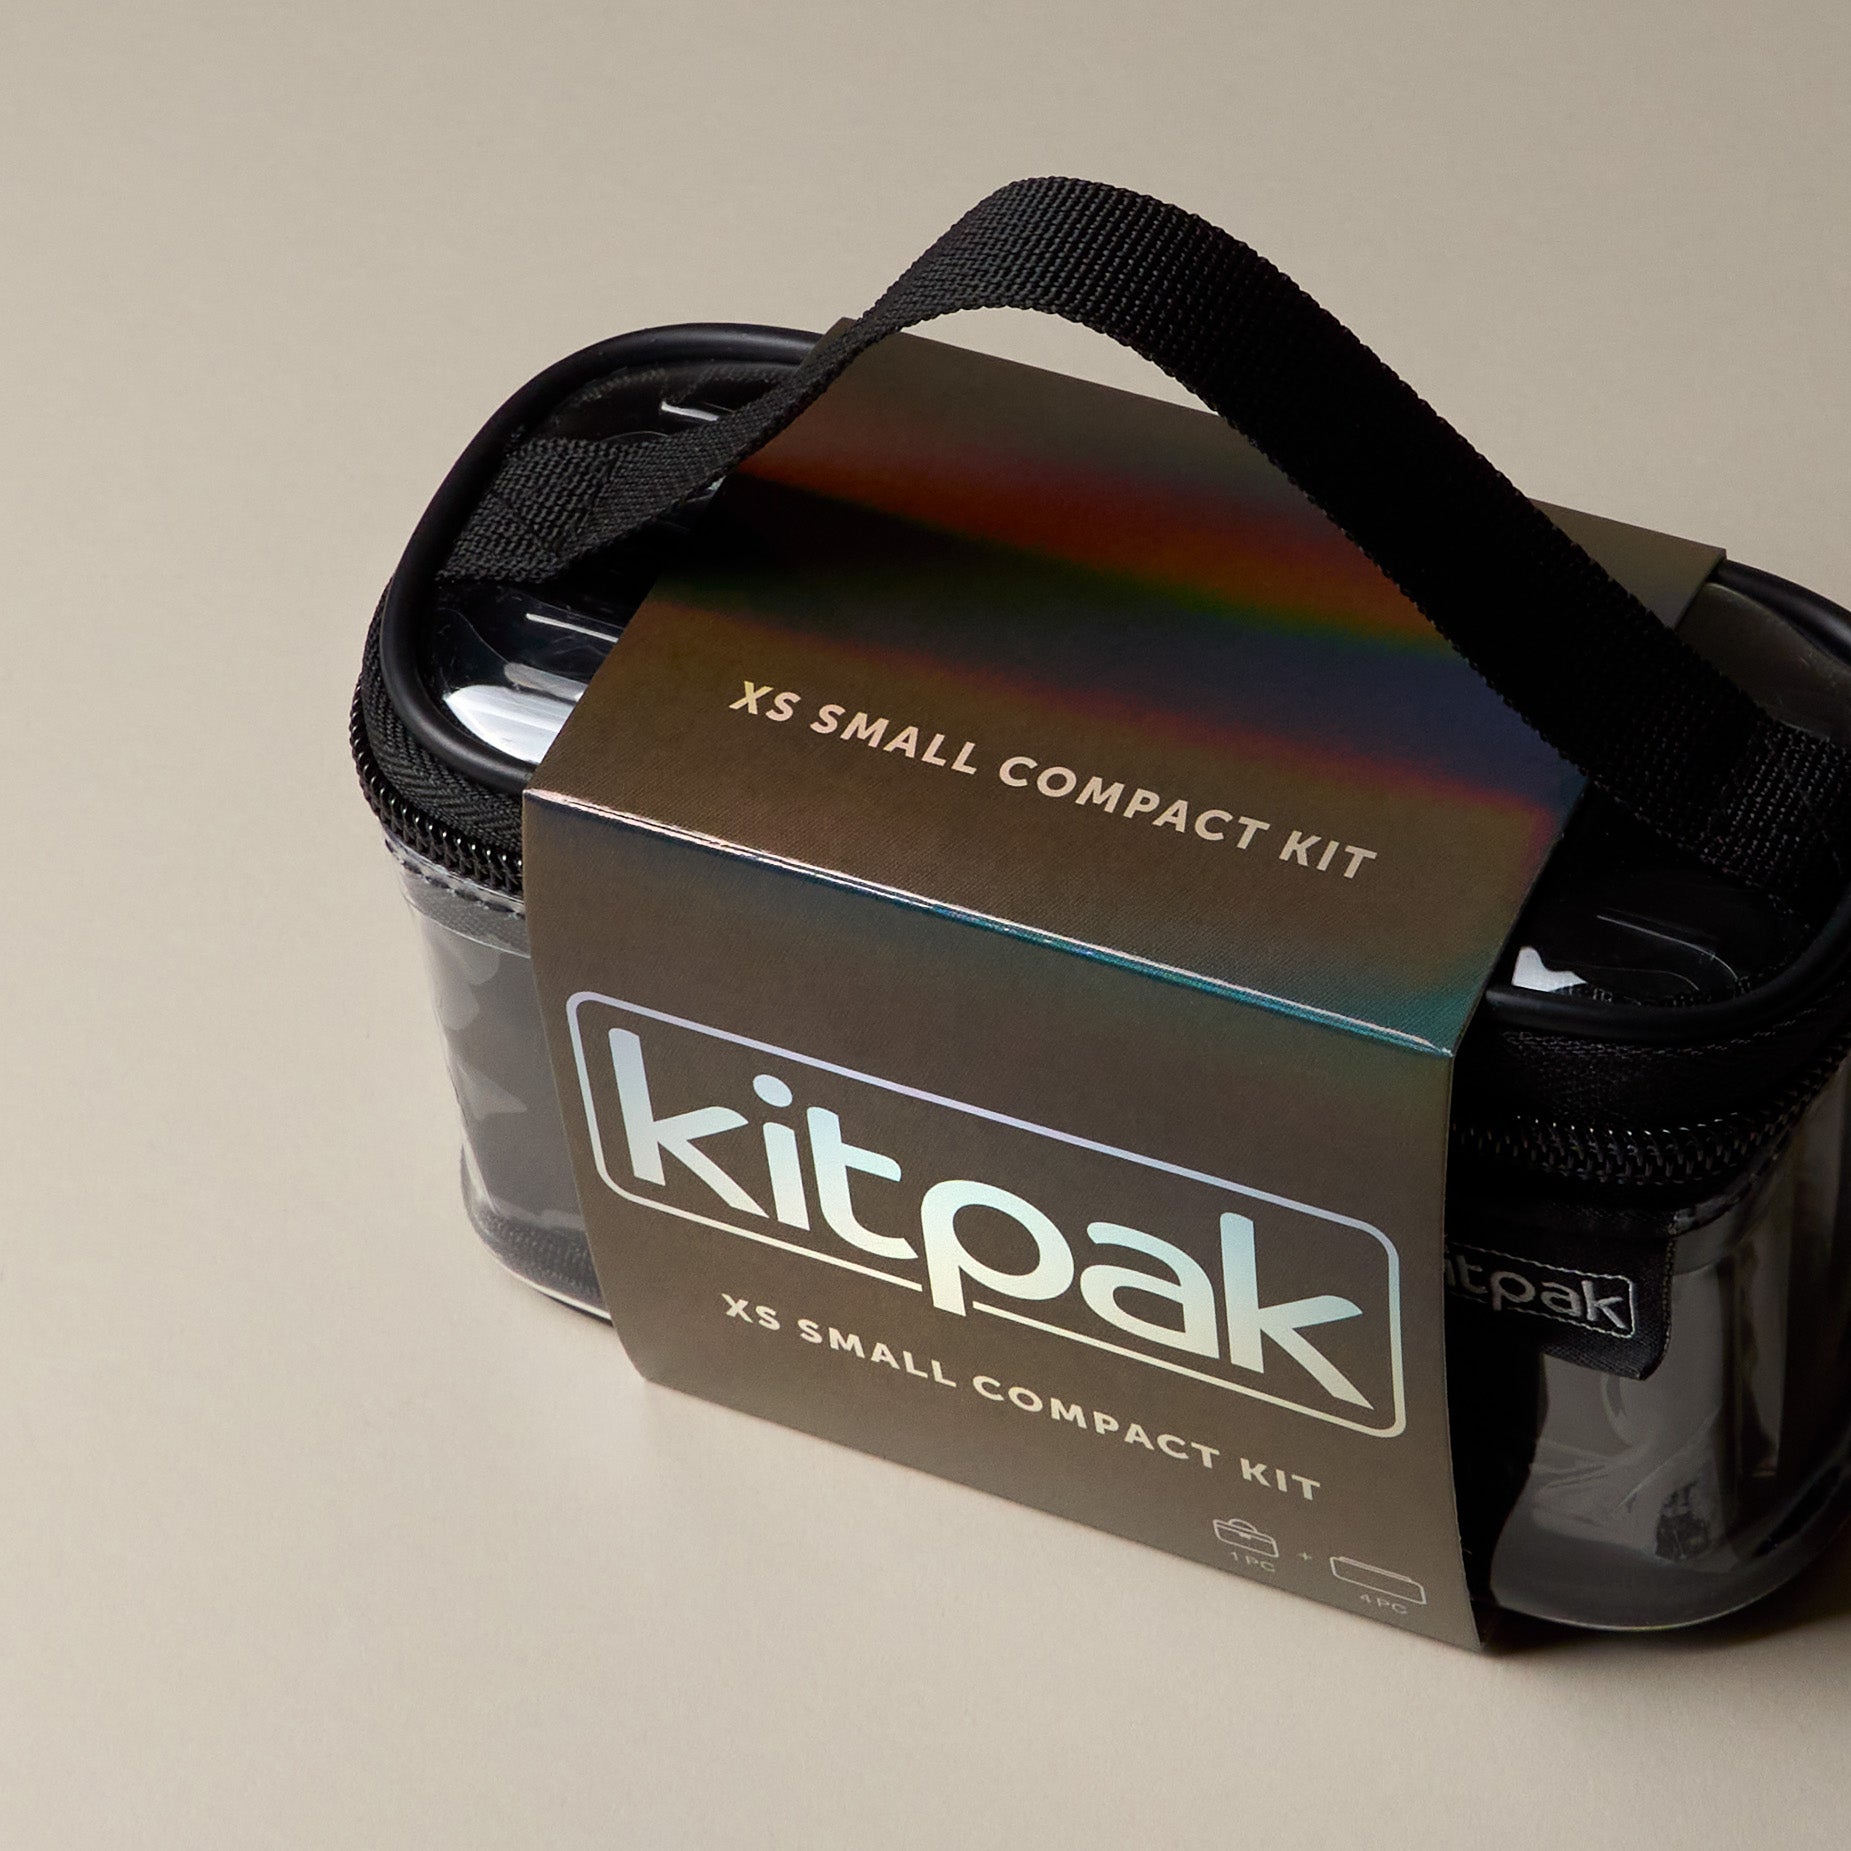 The XS Compact Kit – Kitpak